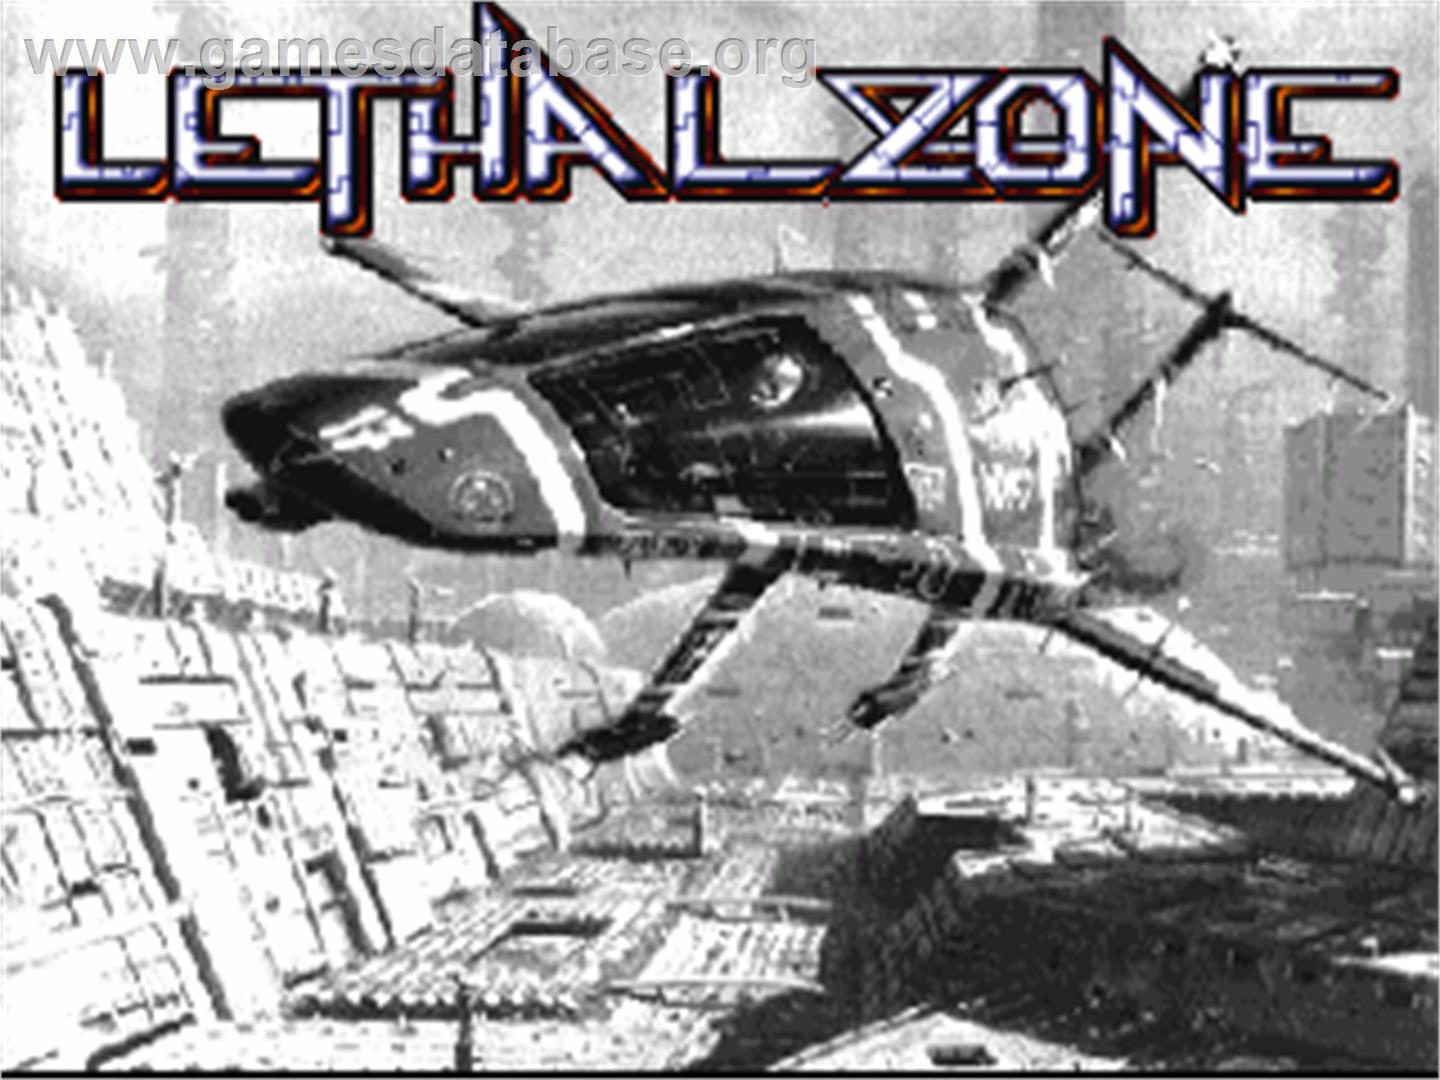 Lethal Zone - Commodore Amiga - Artwork - Title Screen